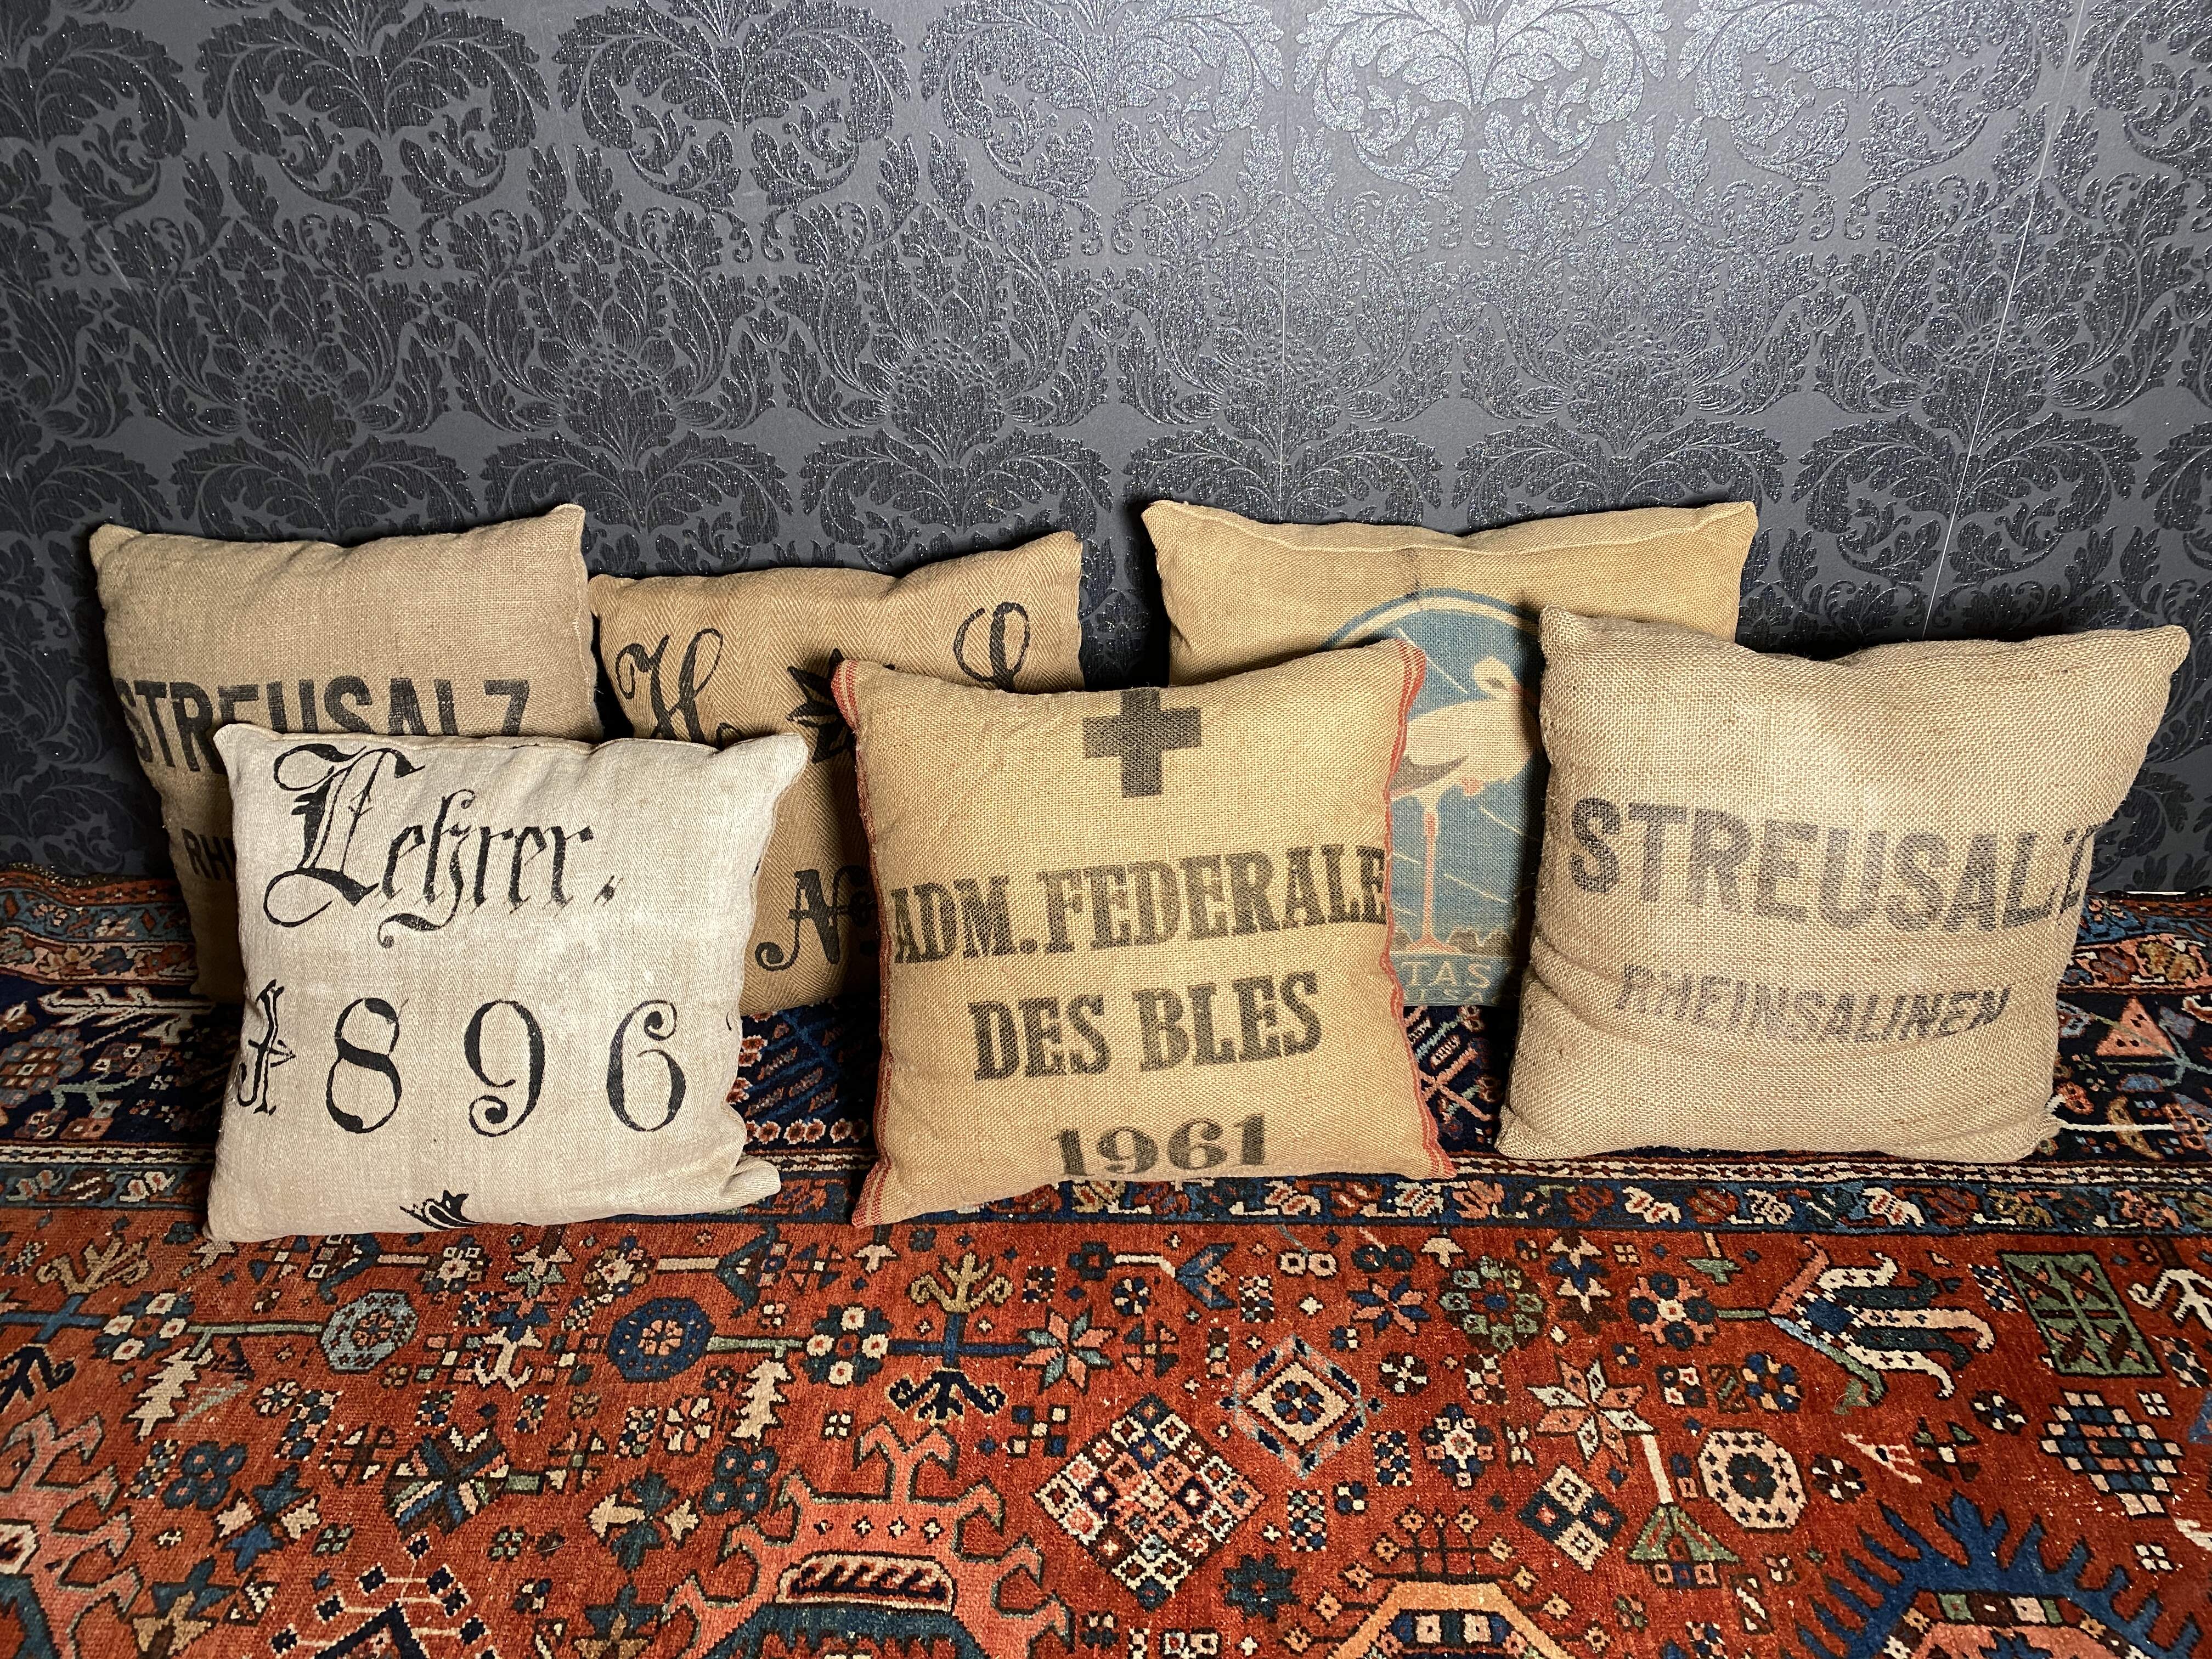 Handgefertigte Kissen aus Jutesäcken "Streusalz, Potasse"